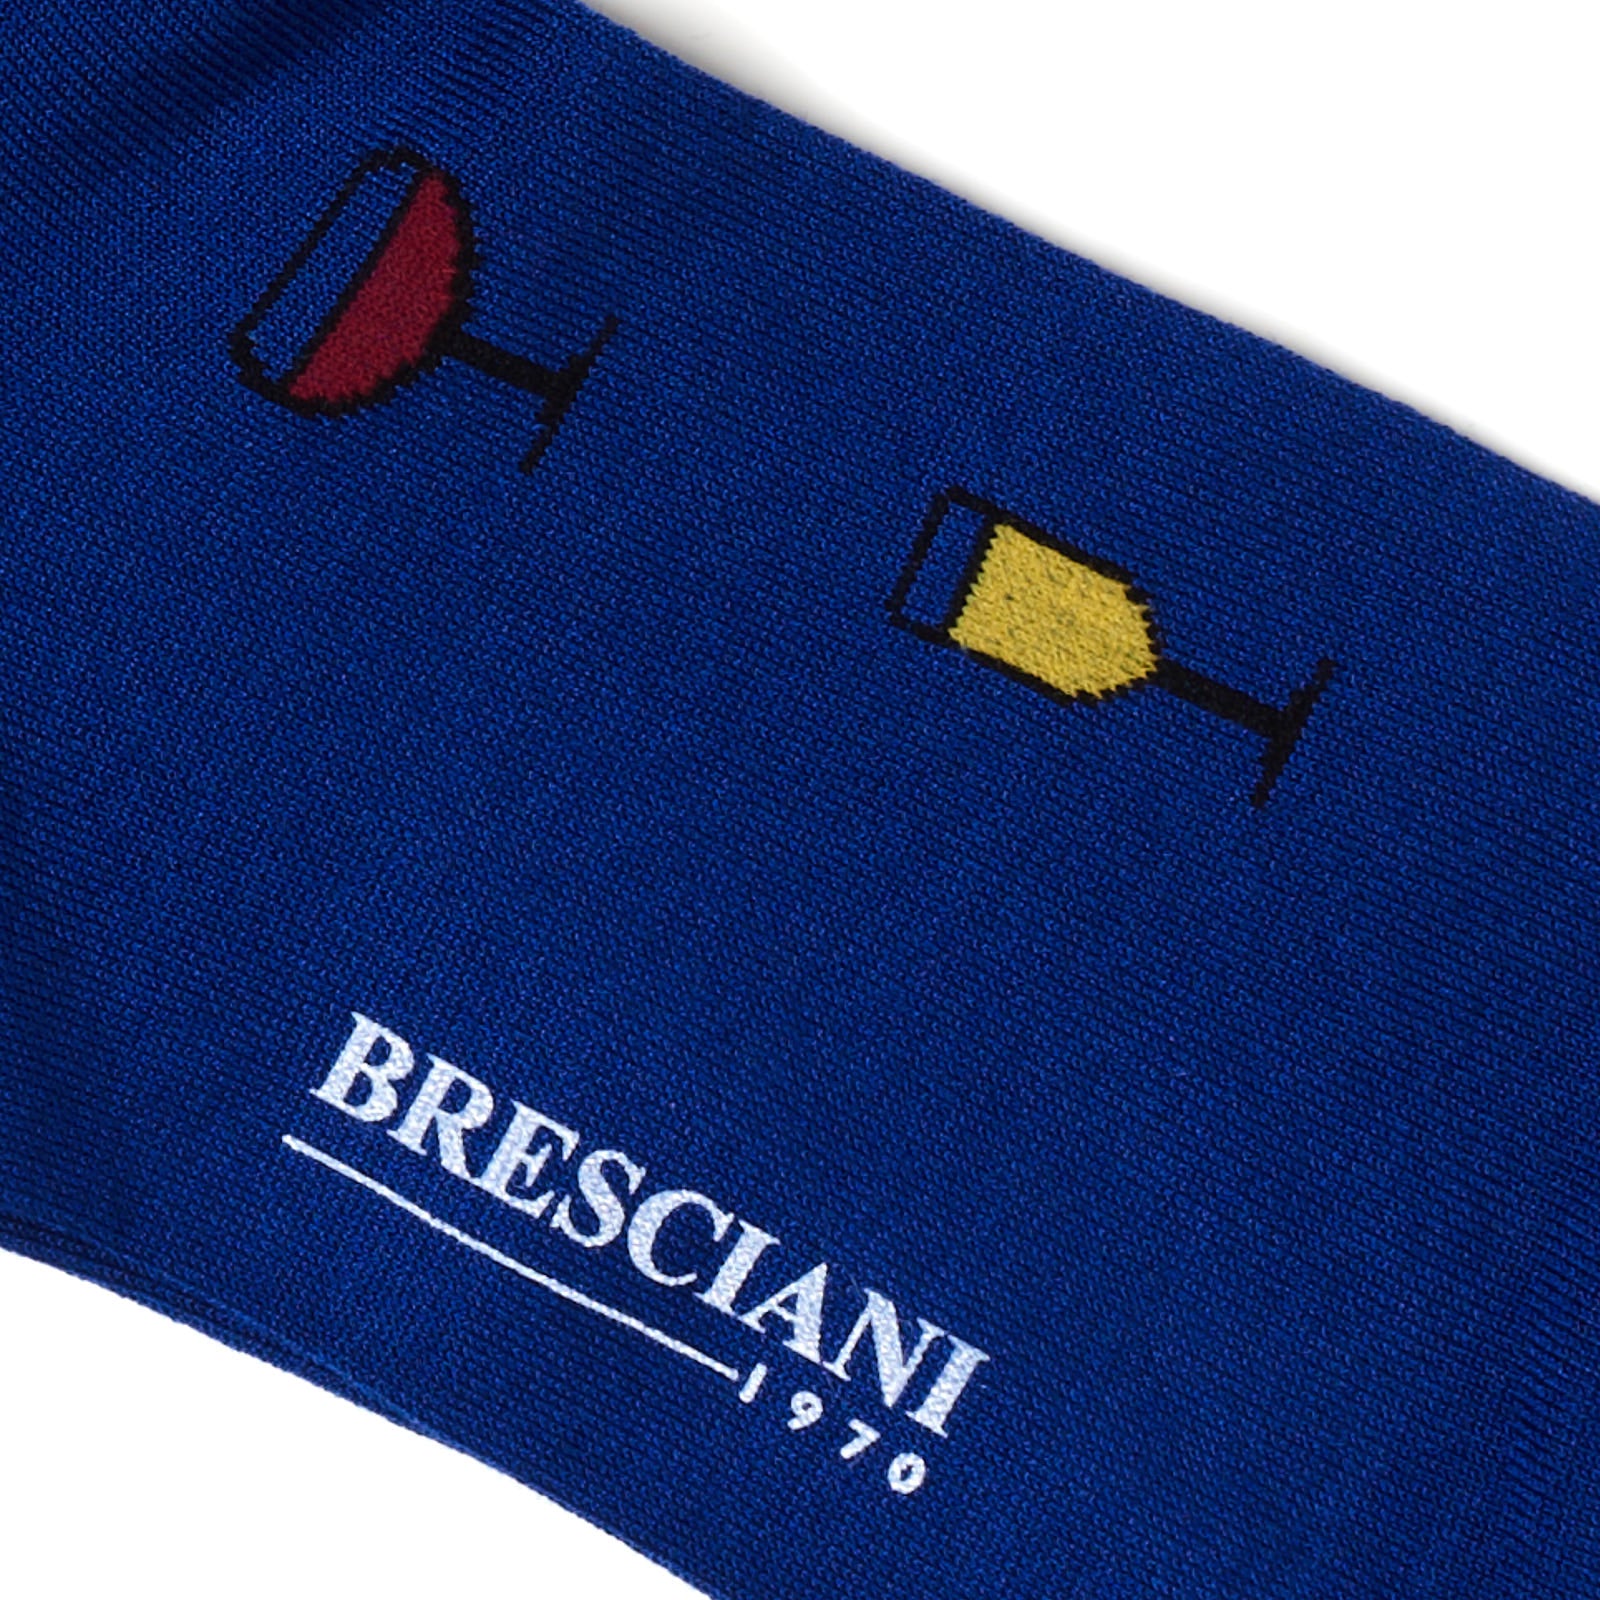 BRESCIANI Cotton Small Pattern Design Mid Calf Length Socks US M BRESCIANI